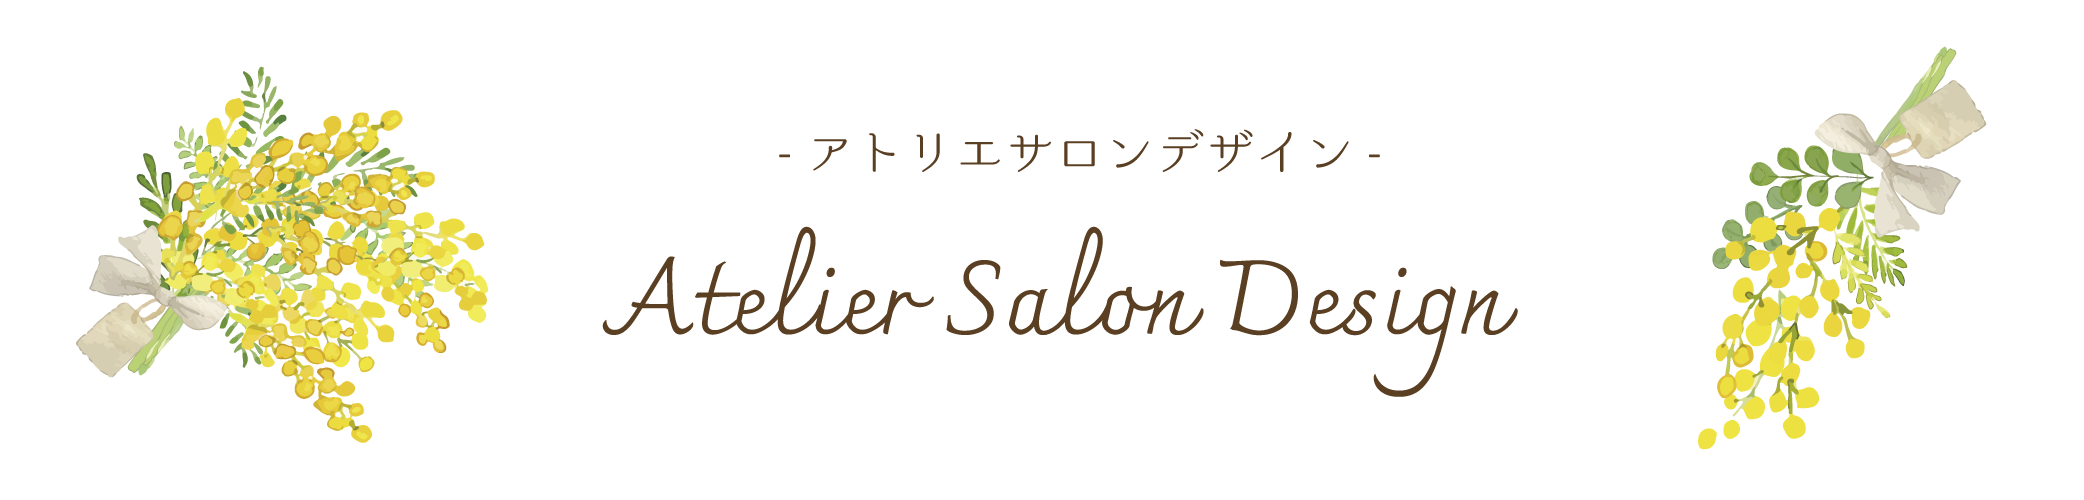 【美容専門デザイン】Atelier Salon Design -アトリエサロンデザイン-